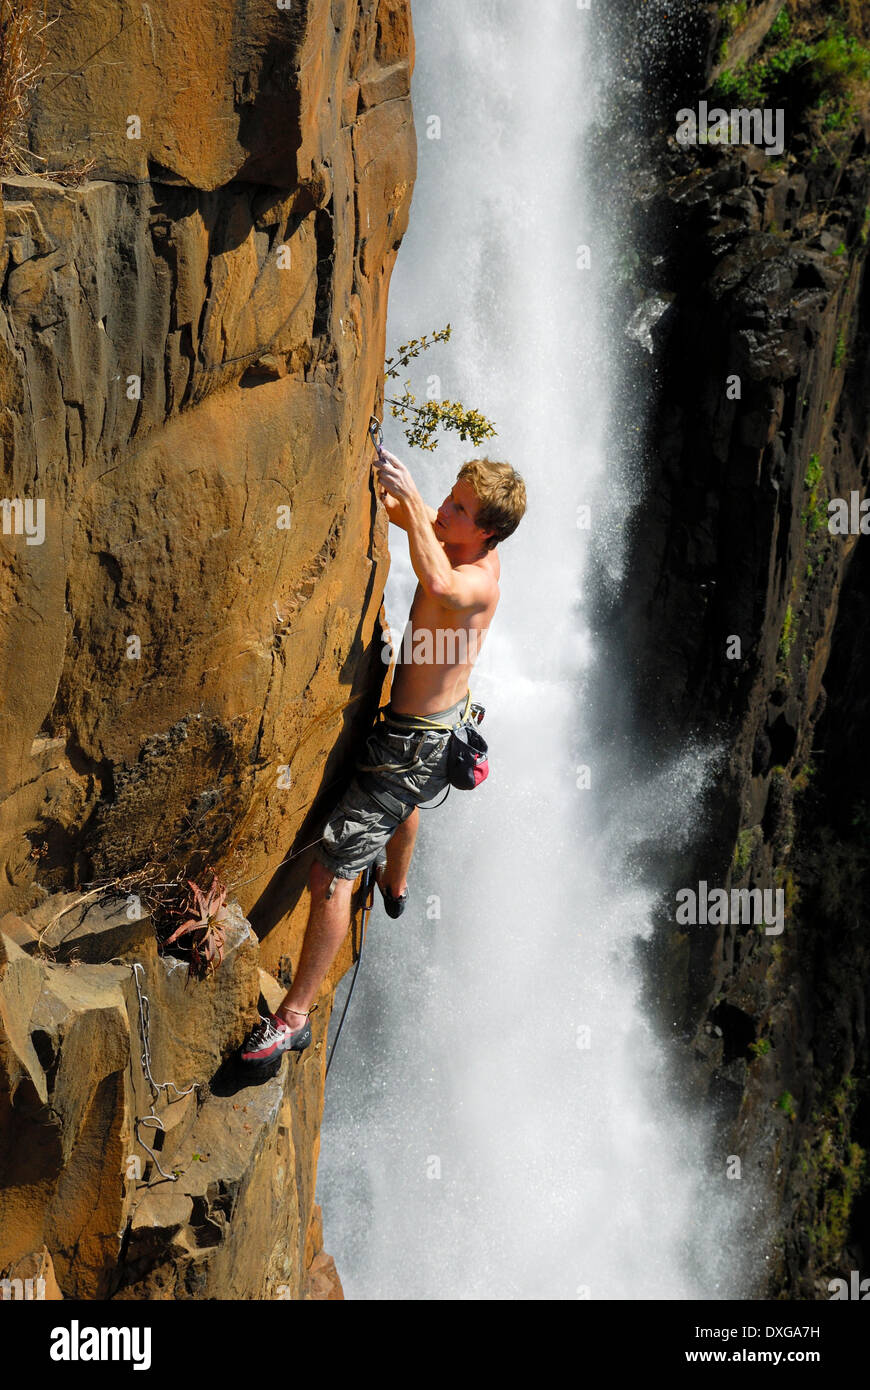 Rock climber at Howick Falls, KZN Stock Photo